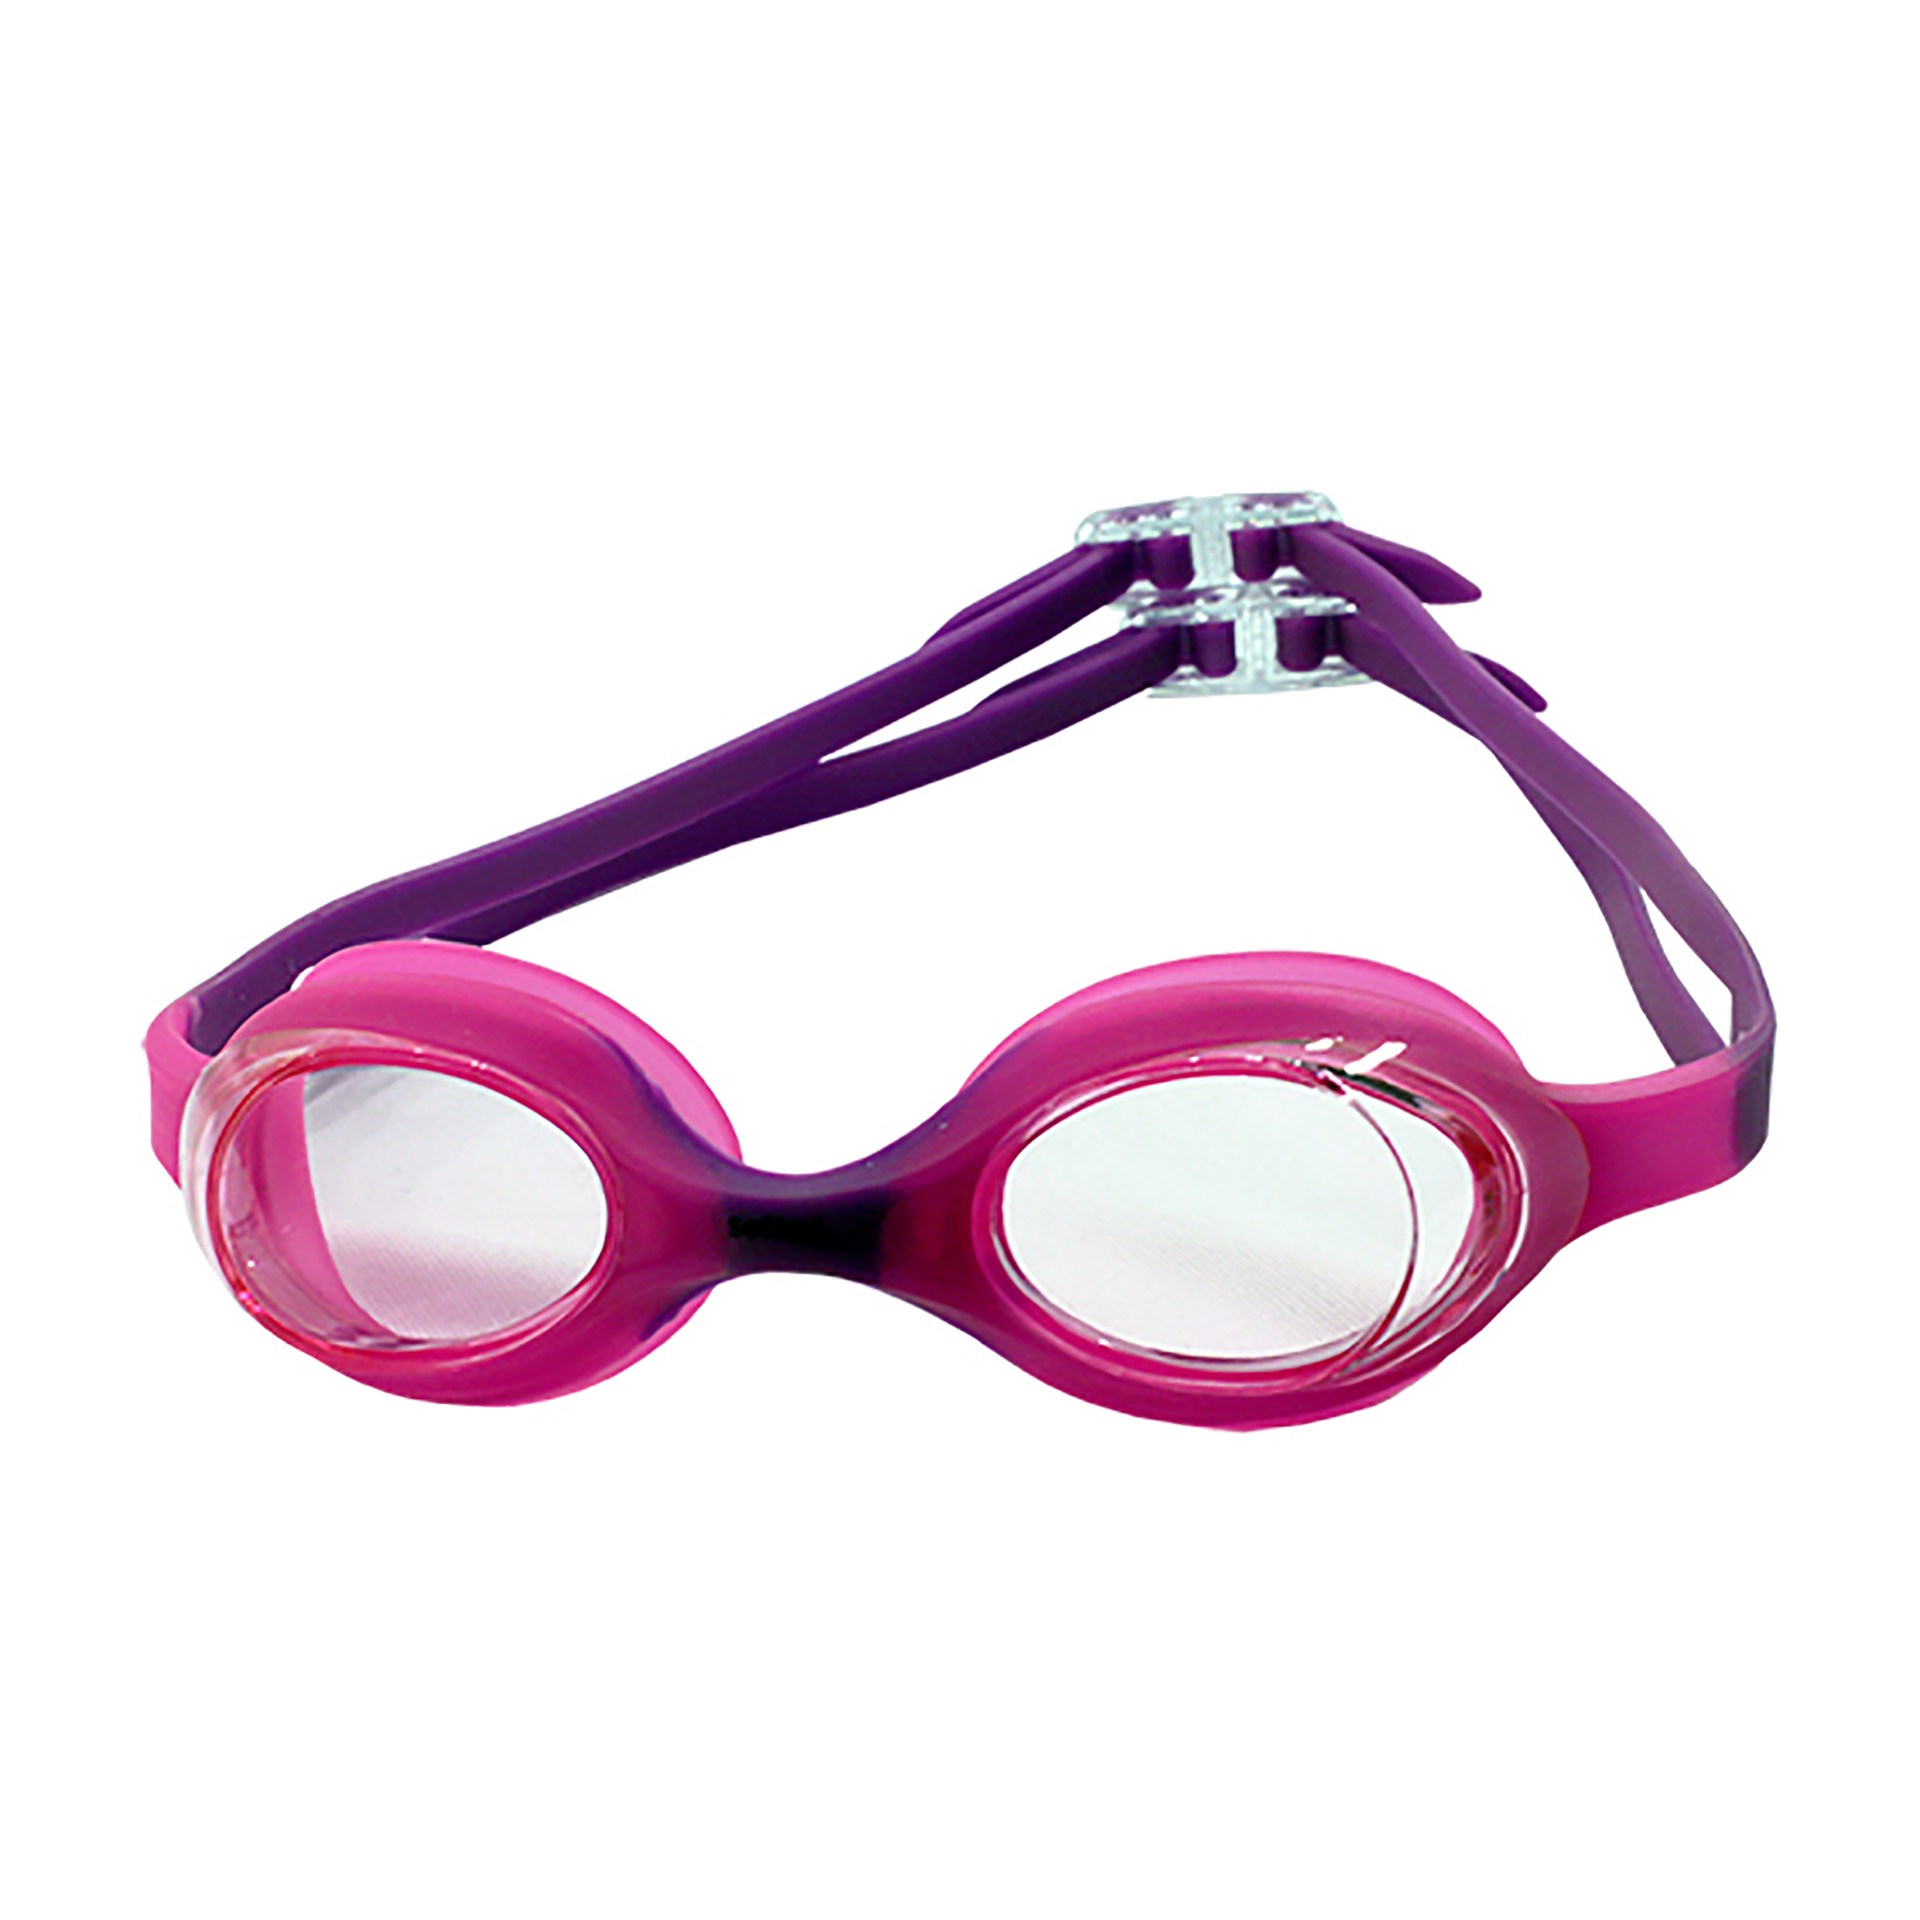 gafa natación alexis junior rosa violeta